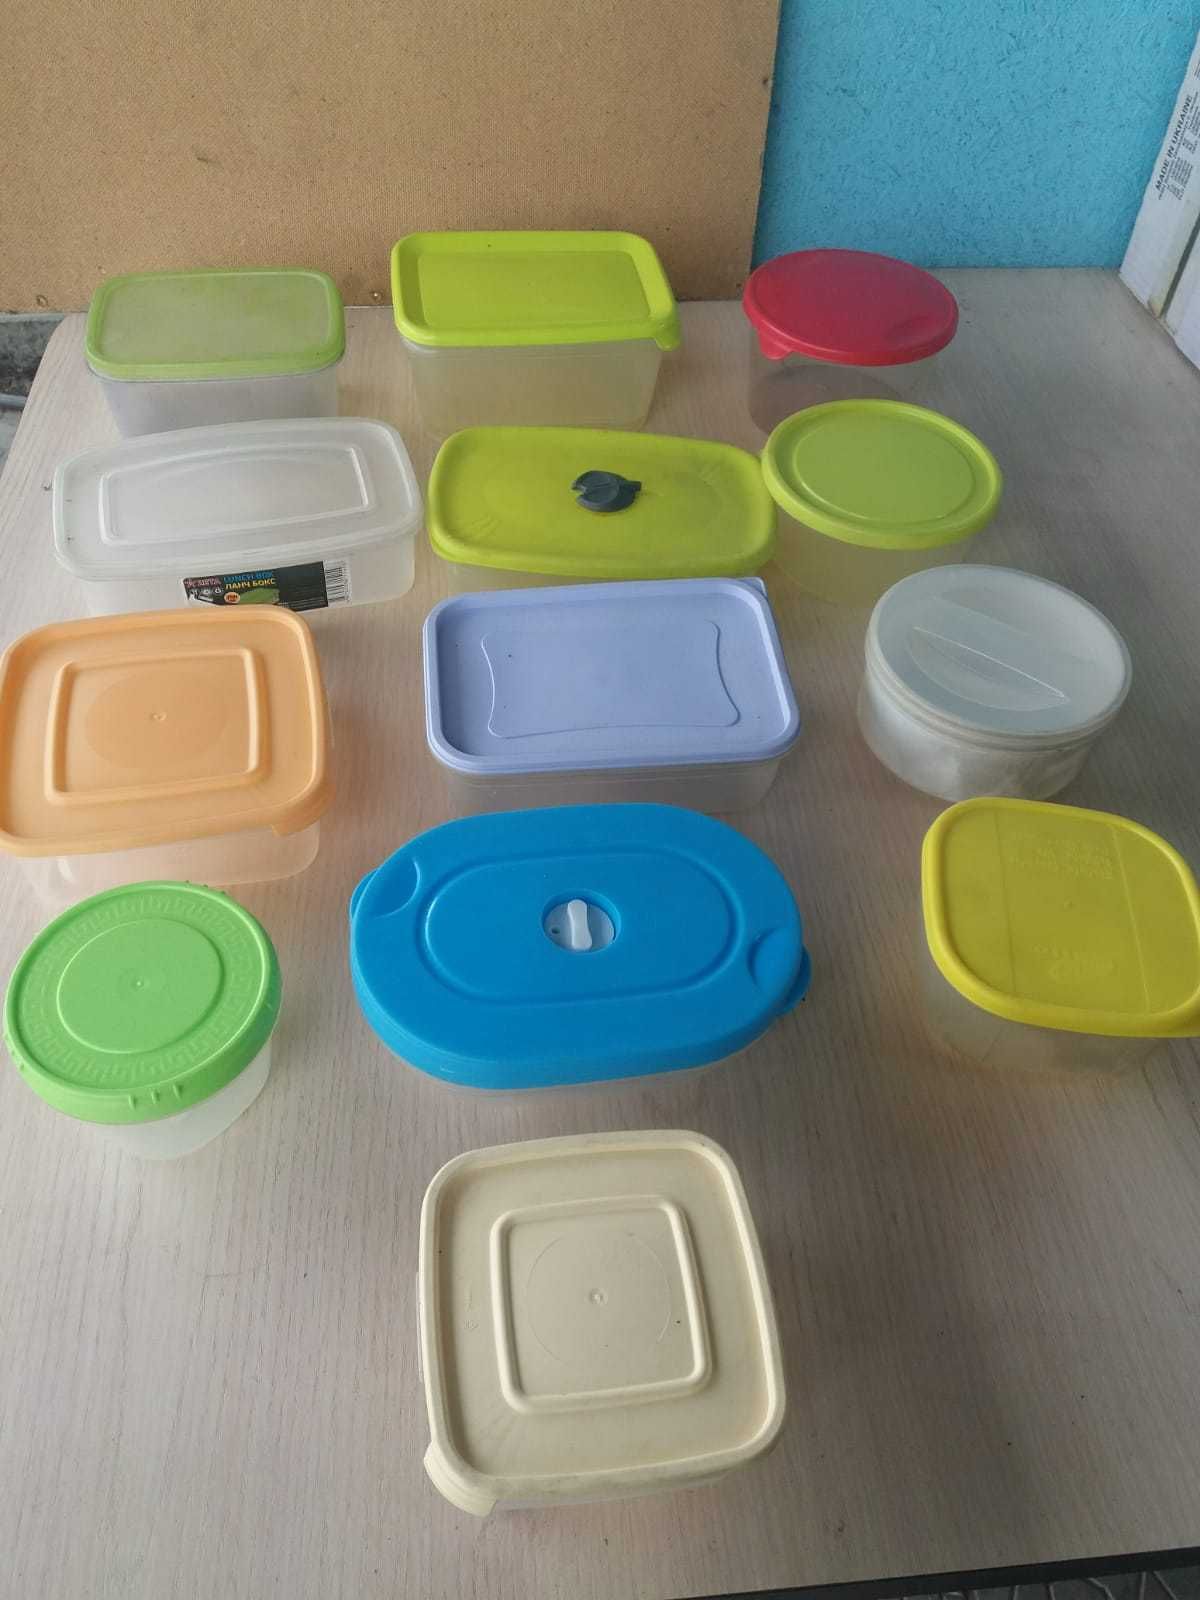 пластиковая одноразовая посуда, ланчбоксы, емкости